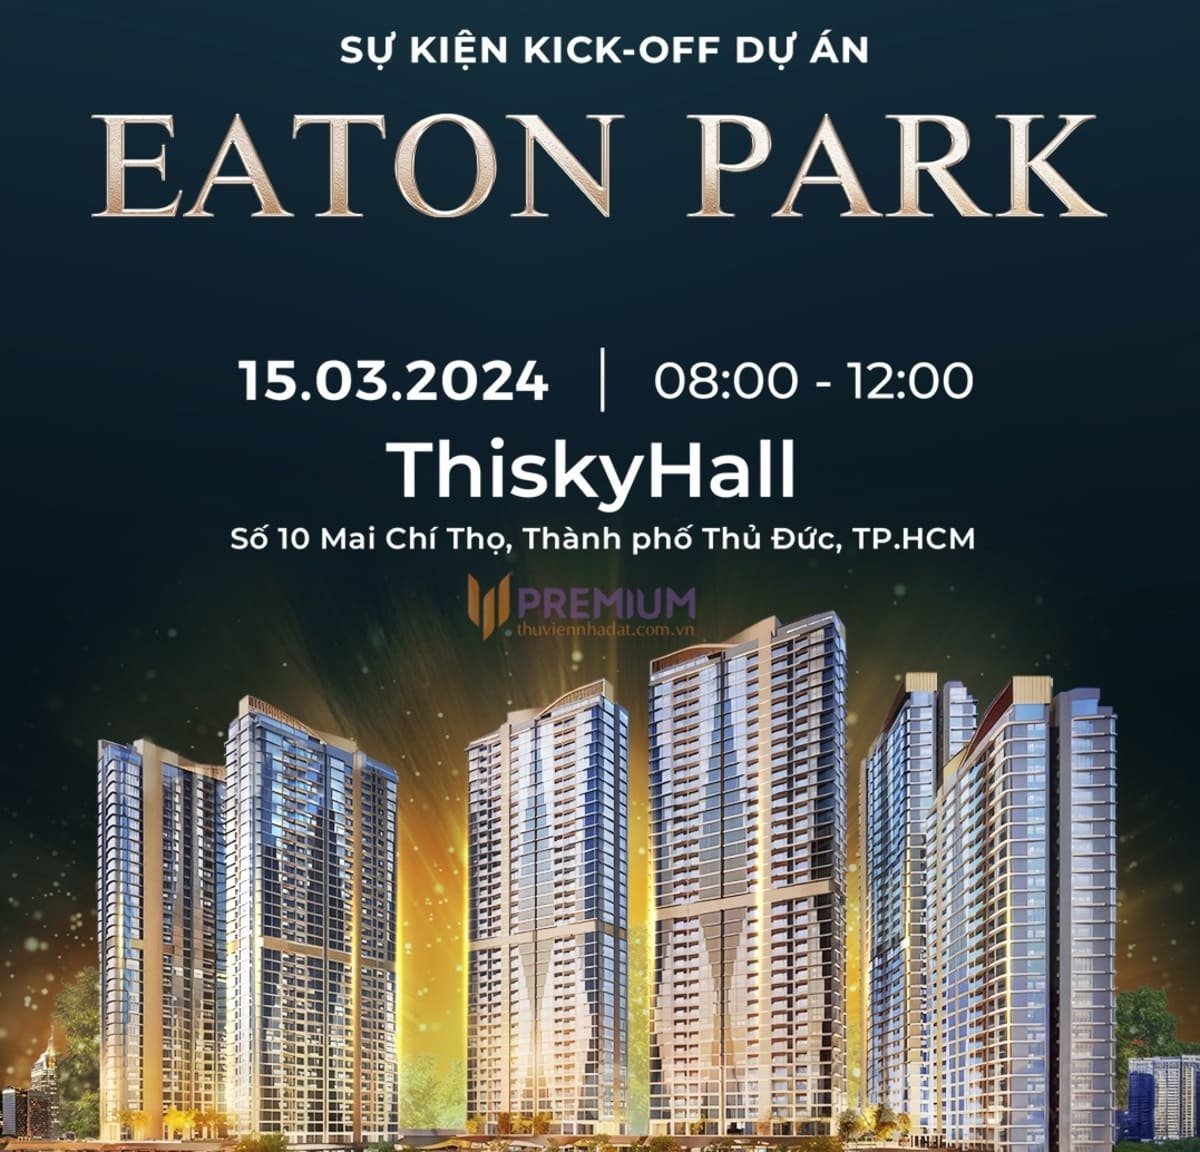 Dự án Eaton Park chính thức kick off vào 15/3/2024 kiến tạo chuẩn mực mới của cuộc sống đô thị